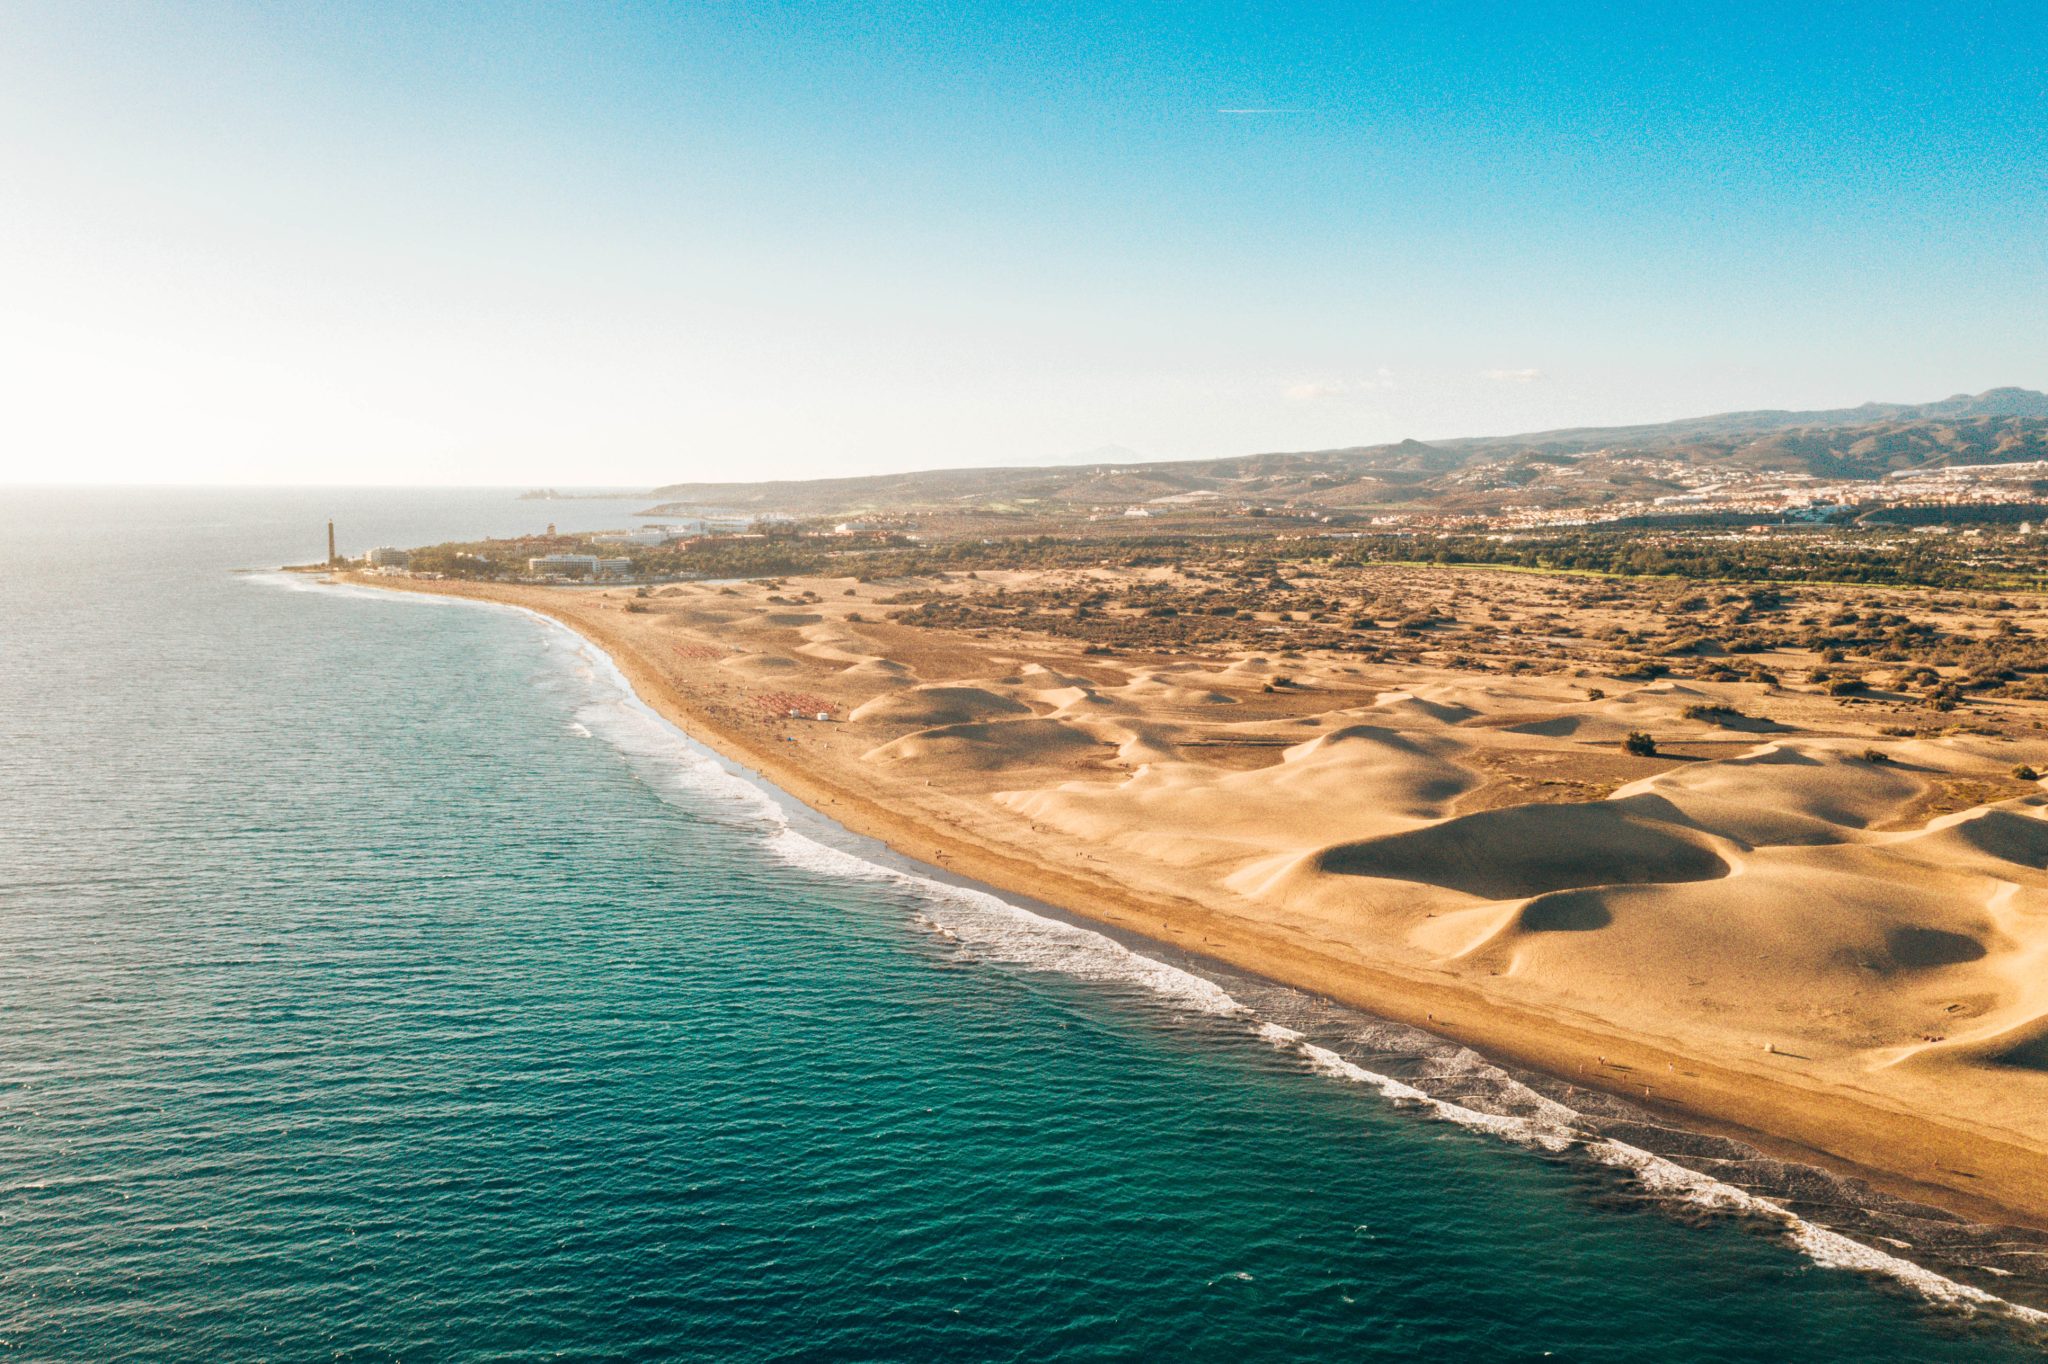 Vue de dunes de Maspalomas aérienne sur l’île de Gran Canaria